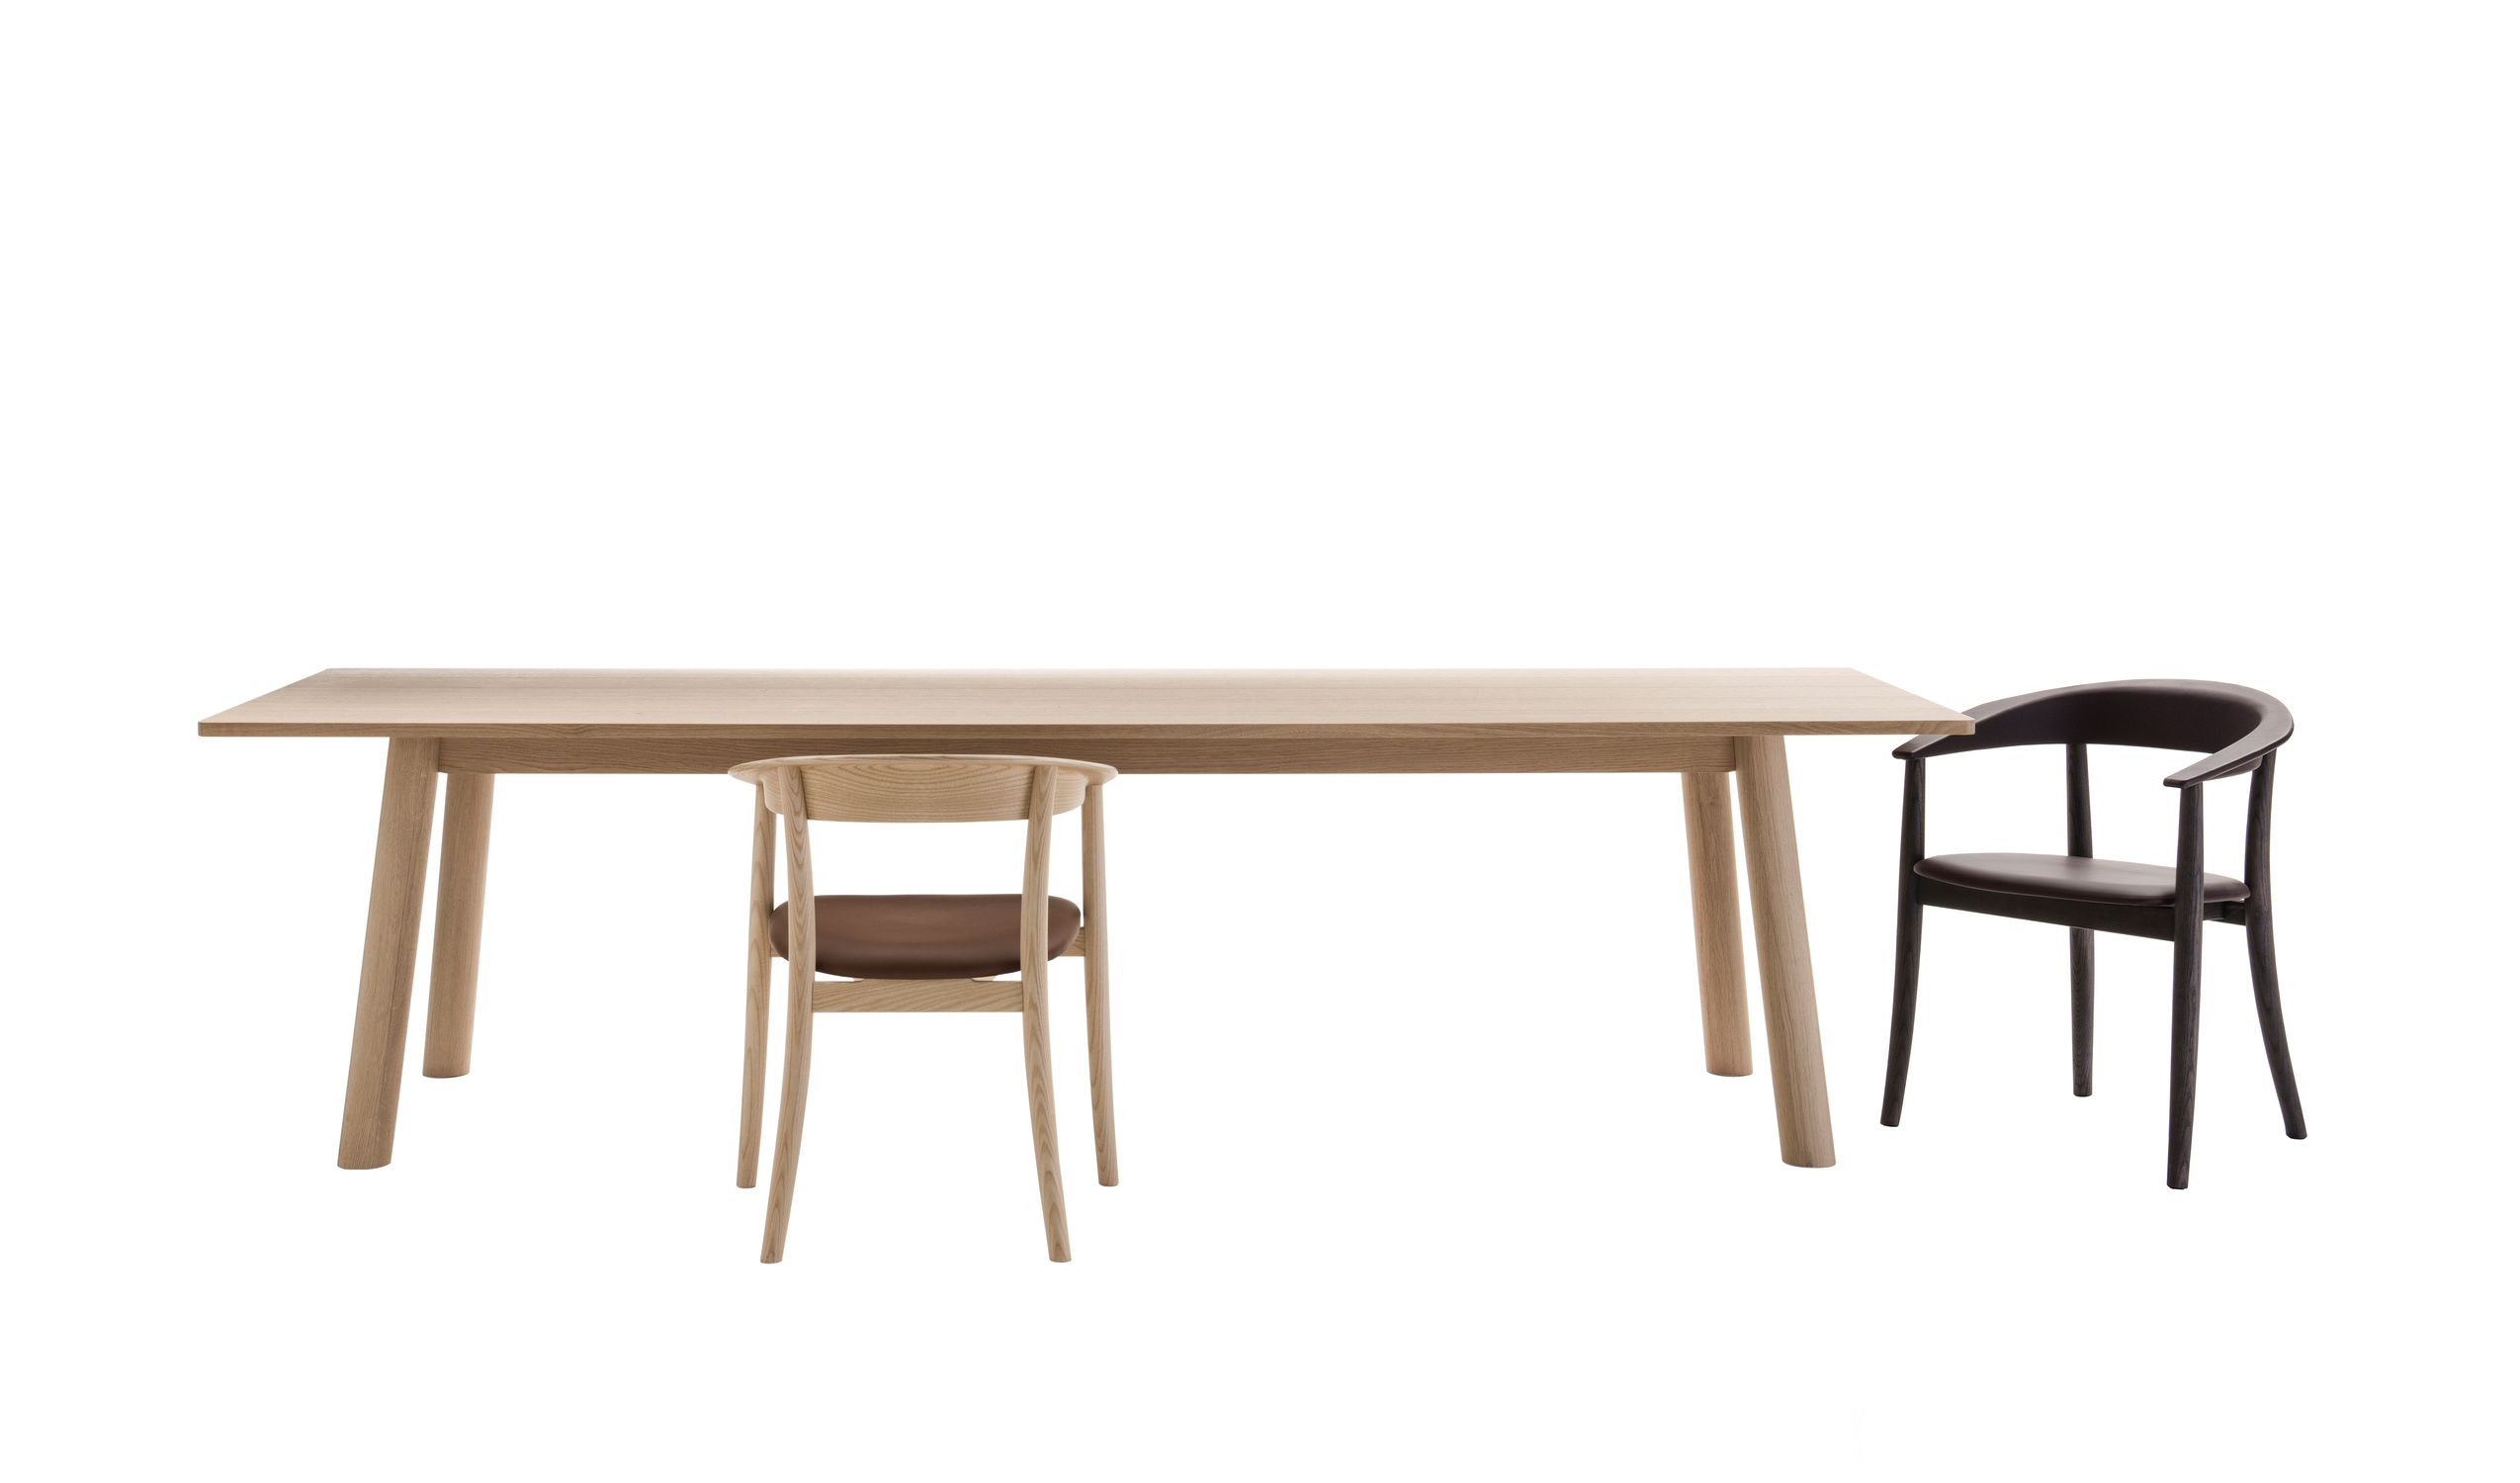 Italian designer modern tables - Bull Tables